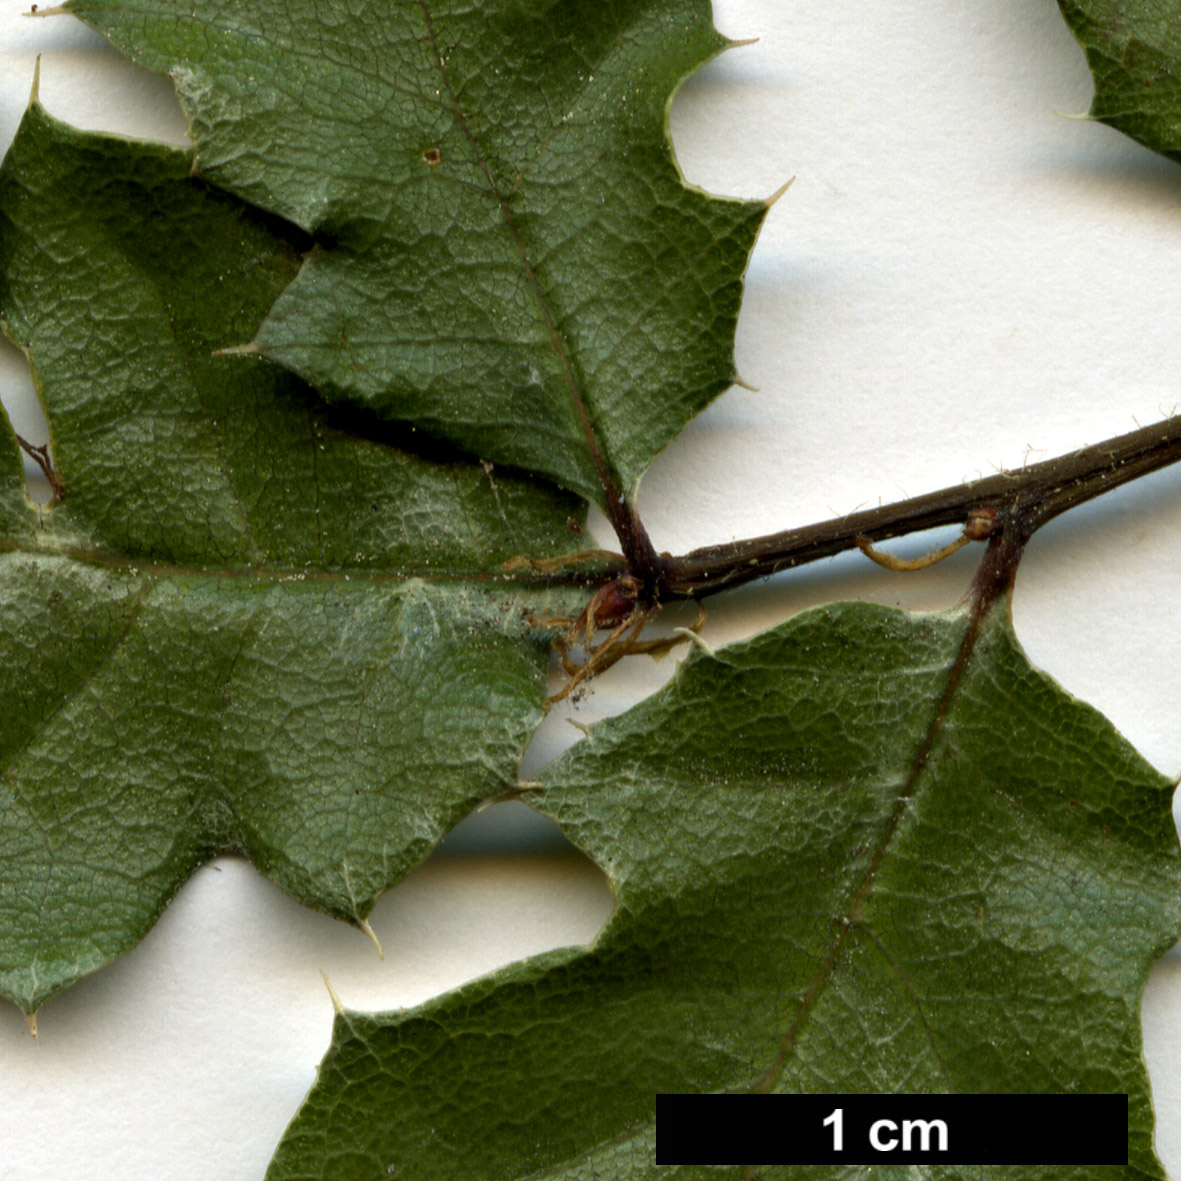 High resolution image: Family: Fagaceae - Genus: Quercus - Taxon: durata - SpeciesSub: var. gabrielensis